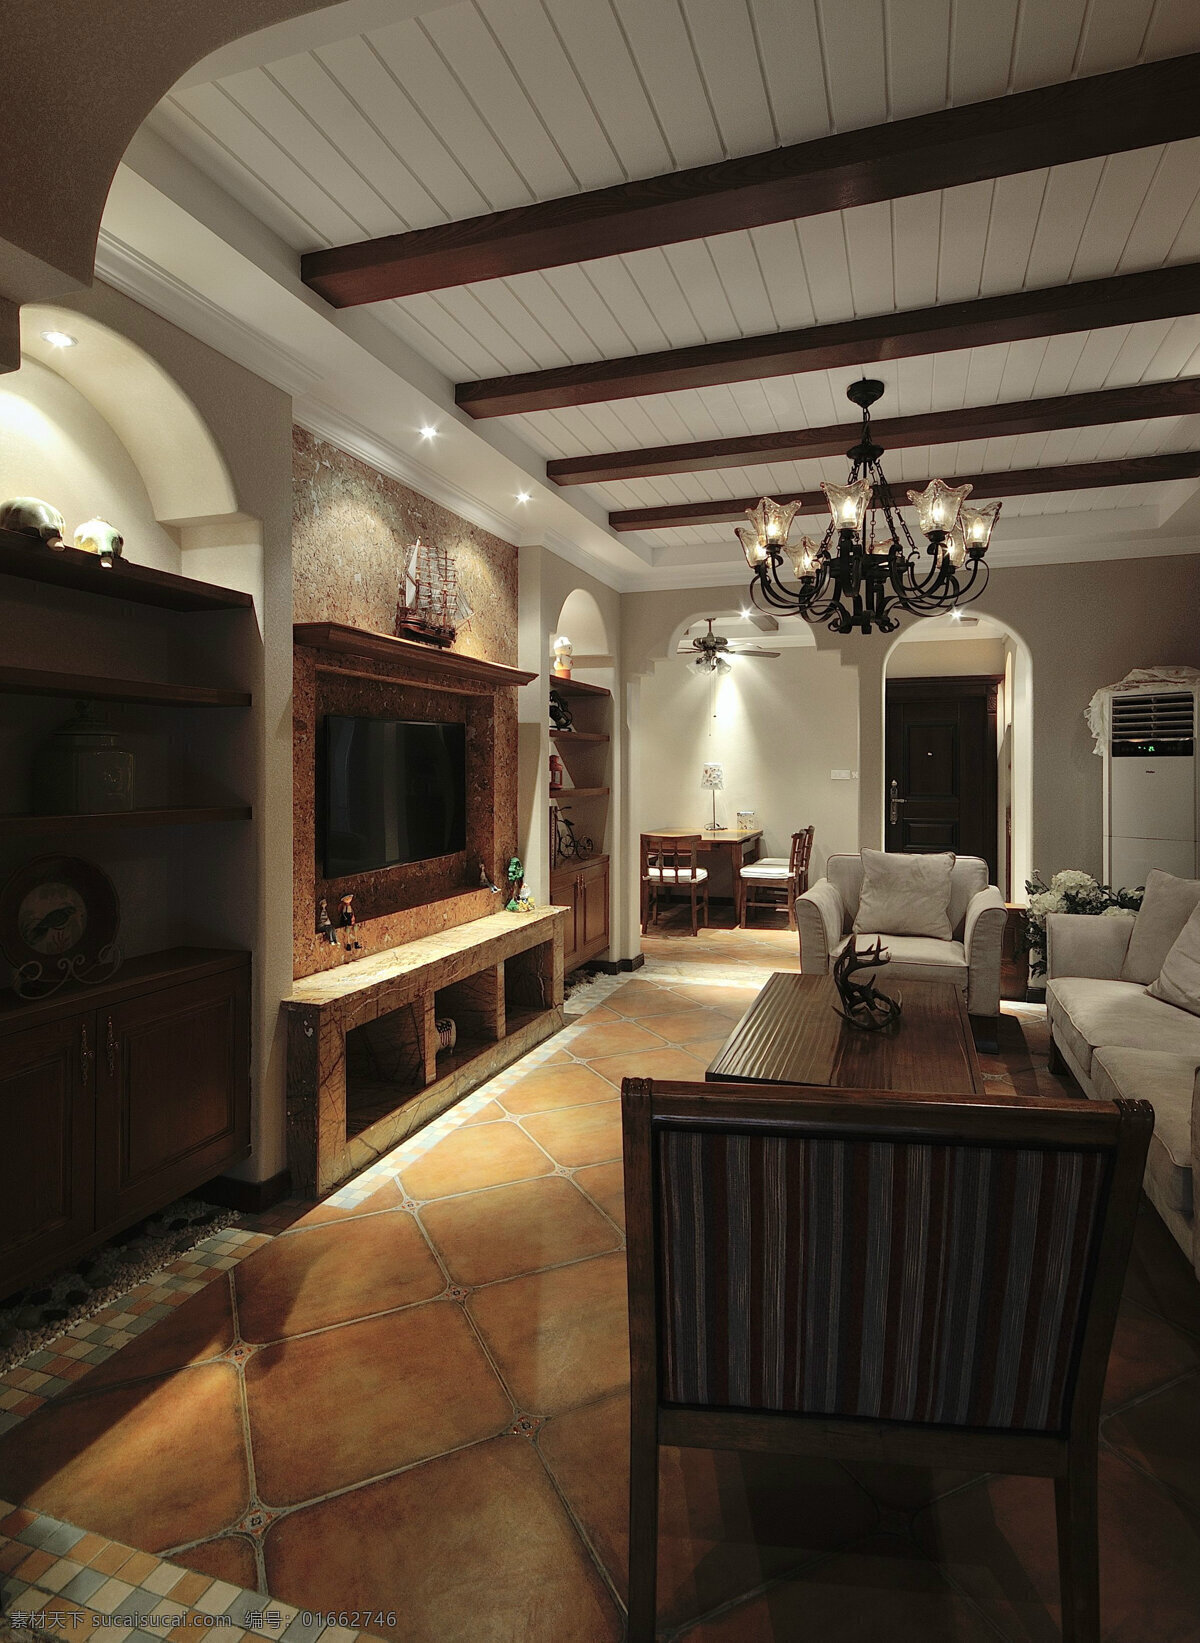 美式 舒适 风格 客厅 壁炉 室内装修 效果图 瓷砖地板 木制桌子 木制电视柜 铁艺吊灯 白色沙发